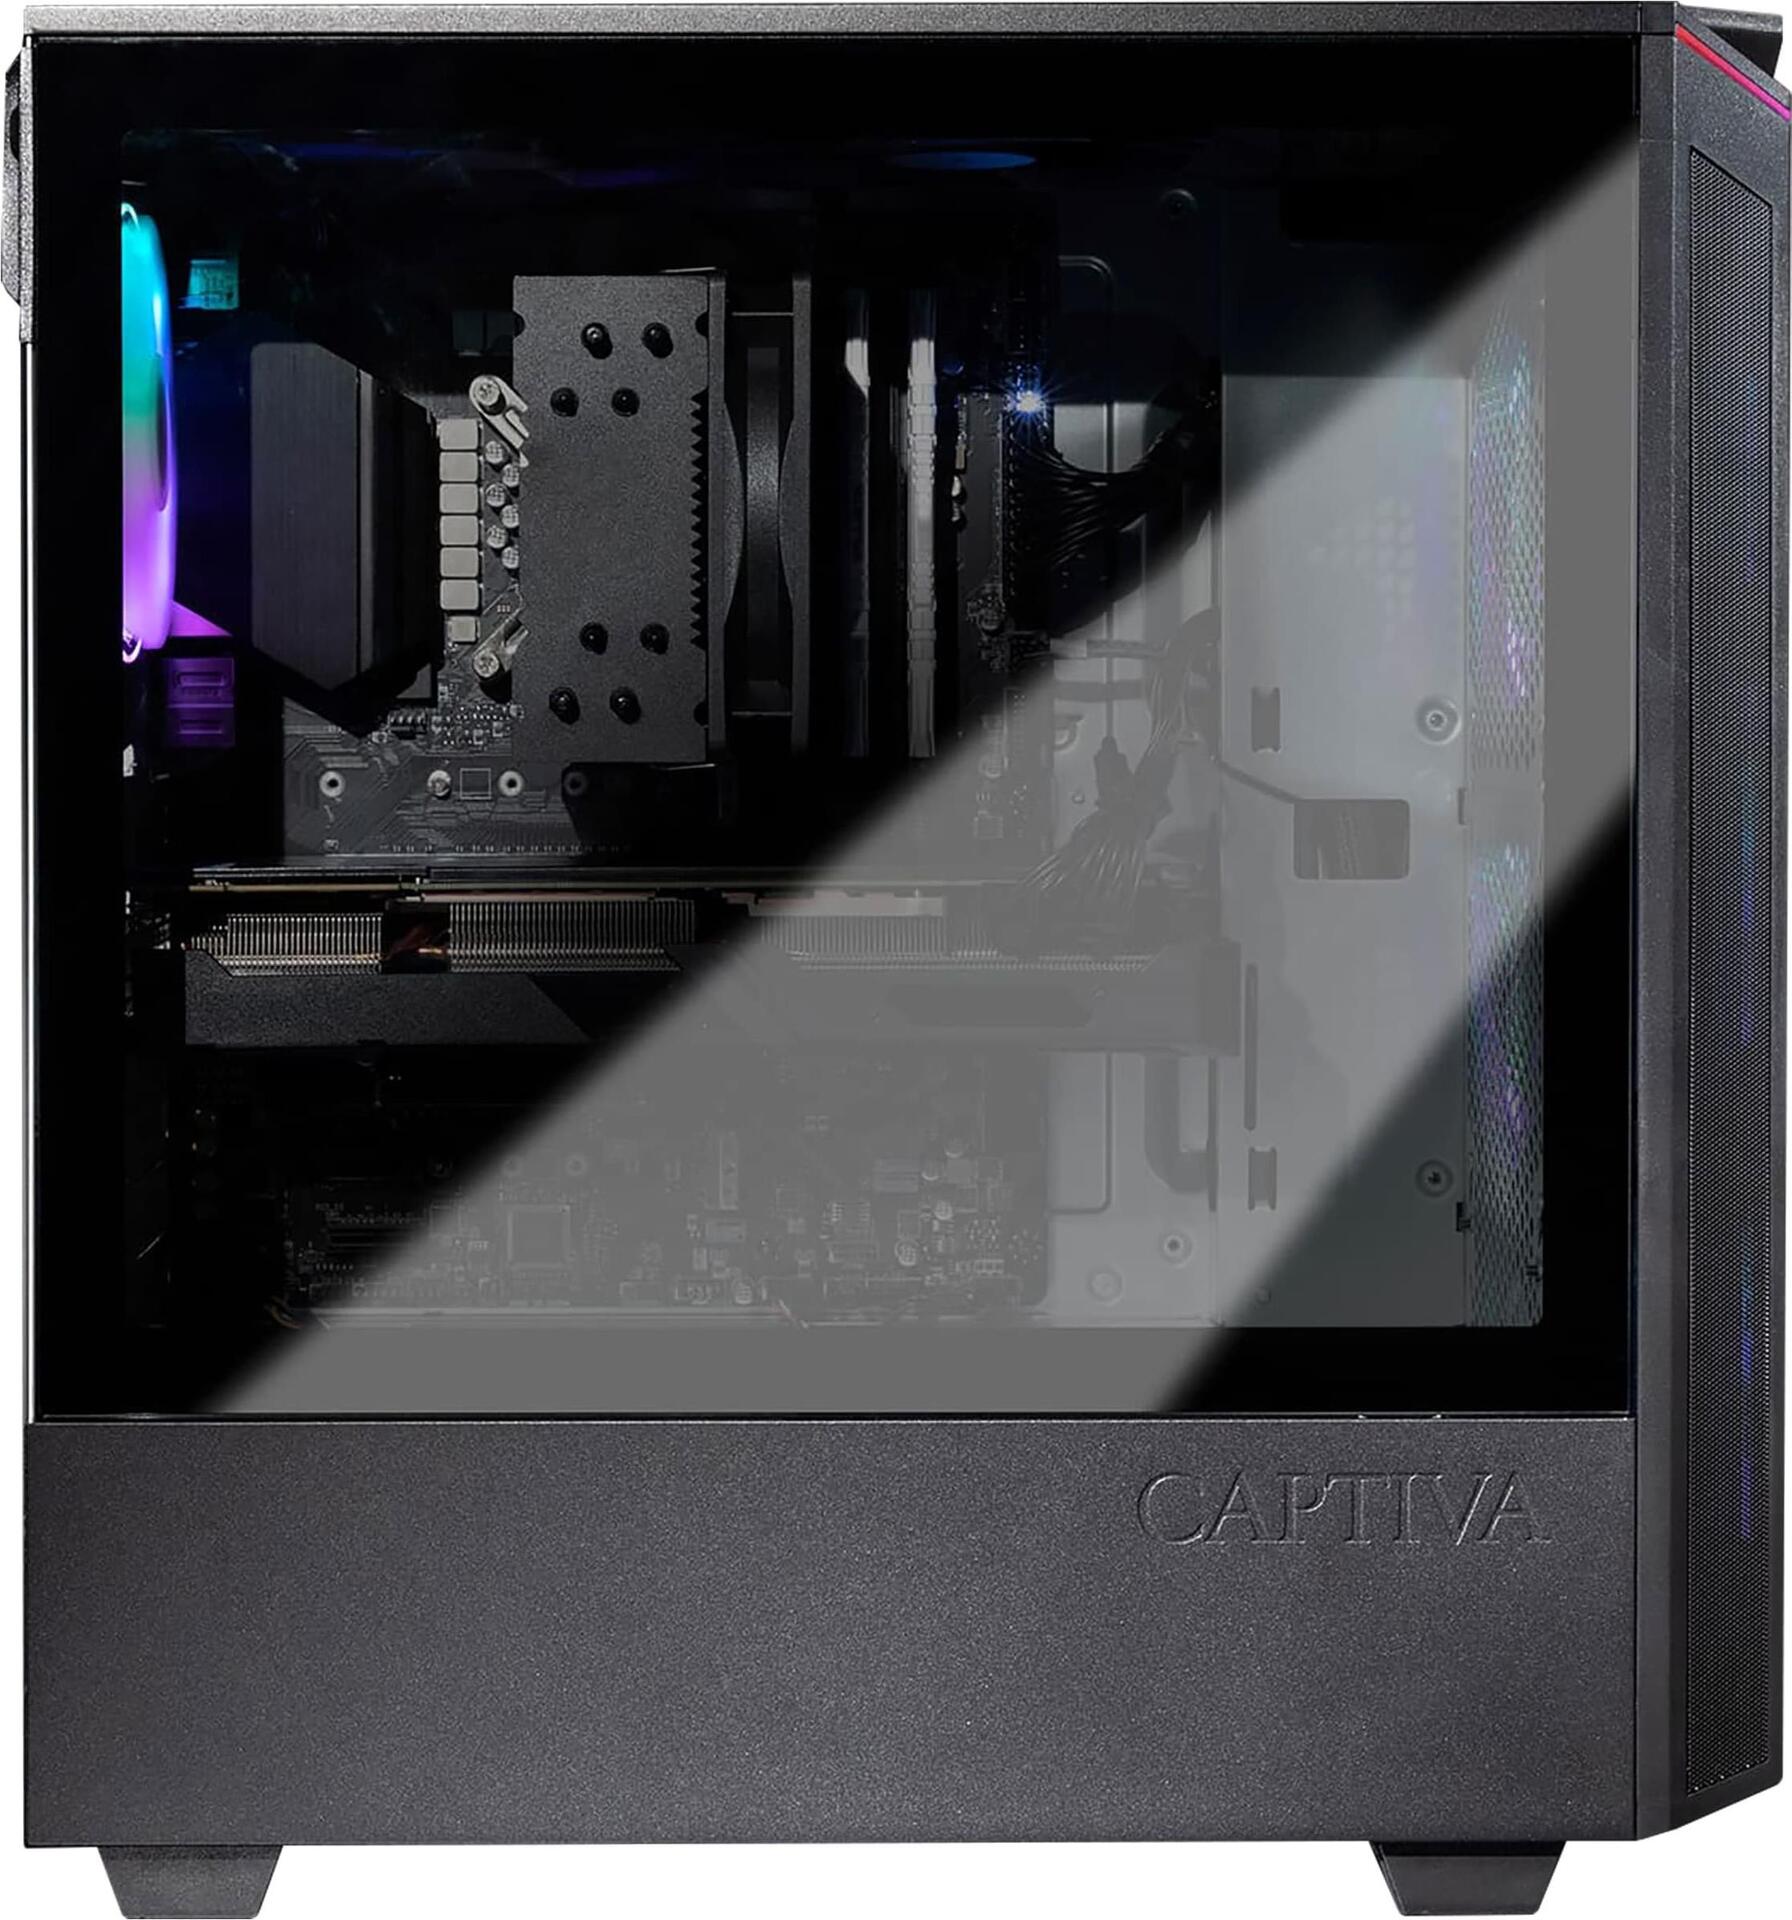 Captiva Advanced Gaming I67-559 | Intel i7 12700KF | Z690 Mainboard | NVIDIA RTX 3050 8GB | 16GB DDR4 RAM | SSD 1TB M.2 | ohne HDD | Luftkühlung | RGB LED | ohne Windows | PC Spiele